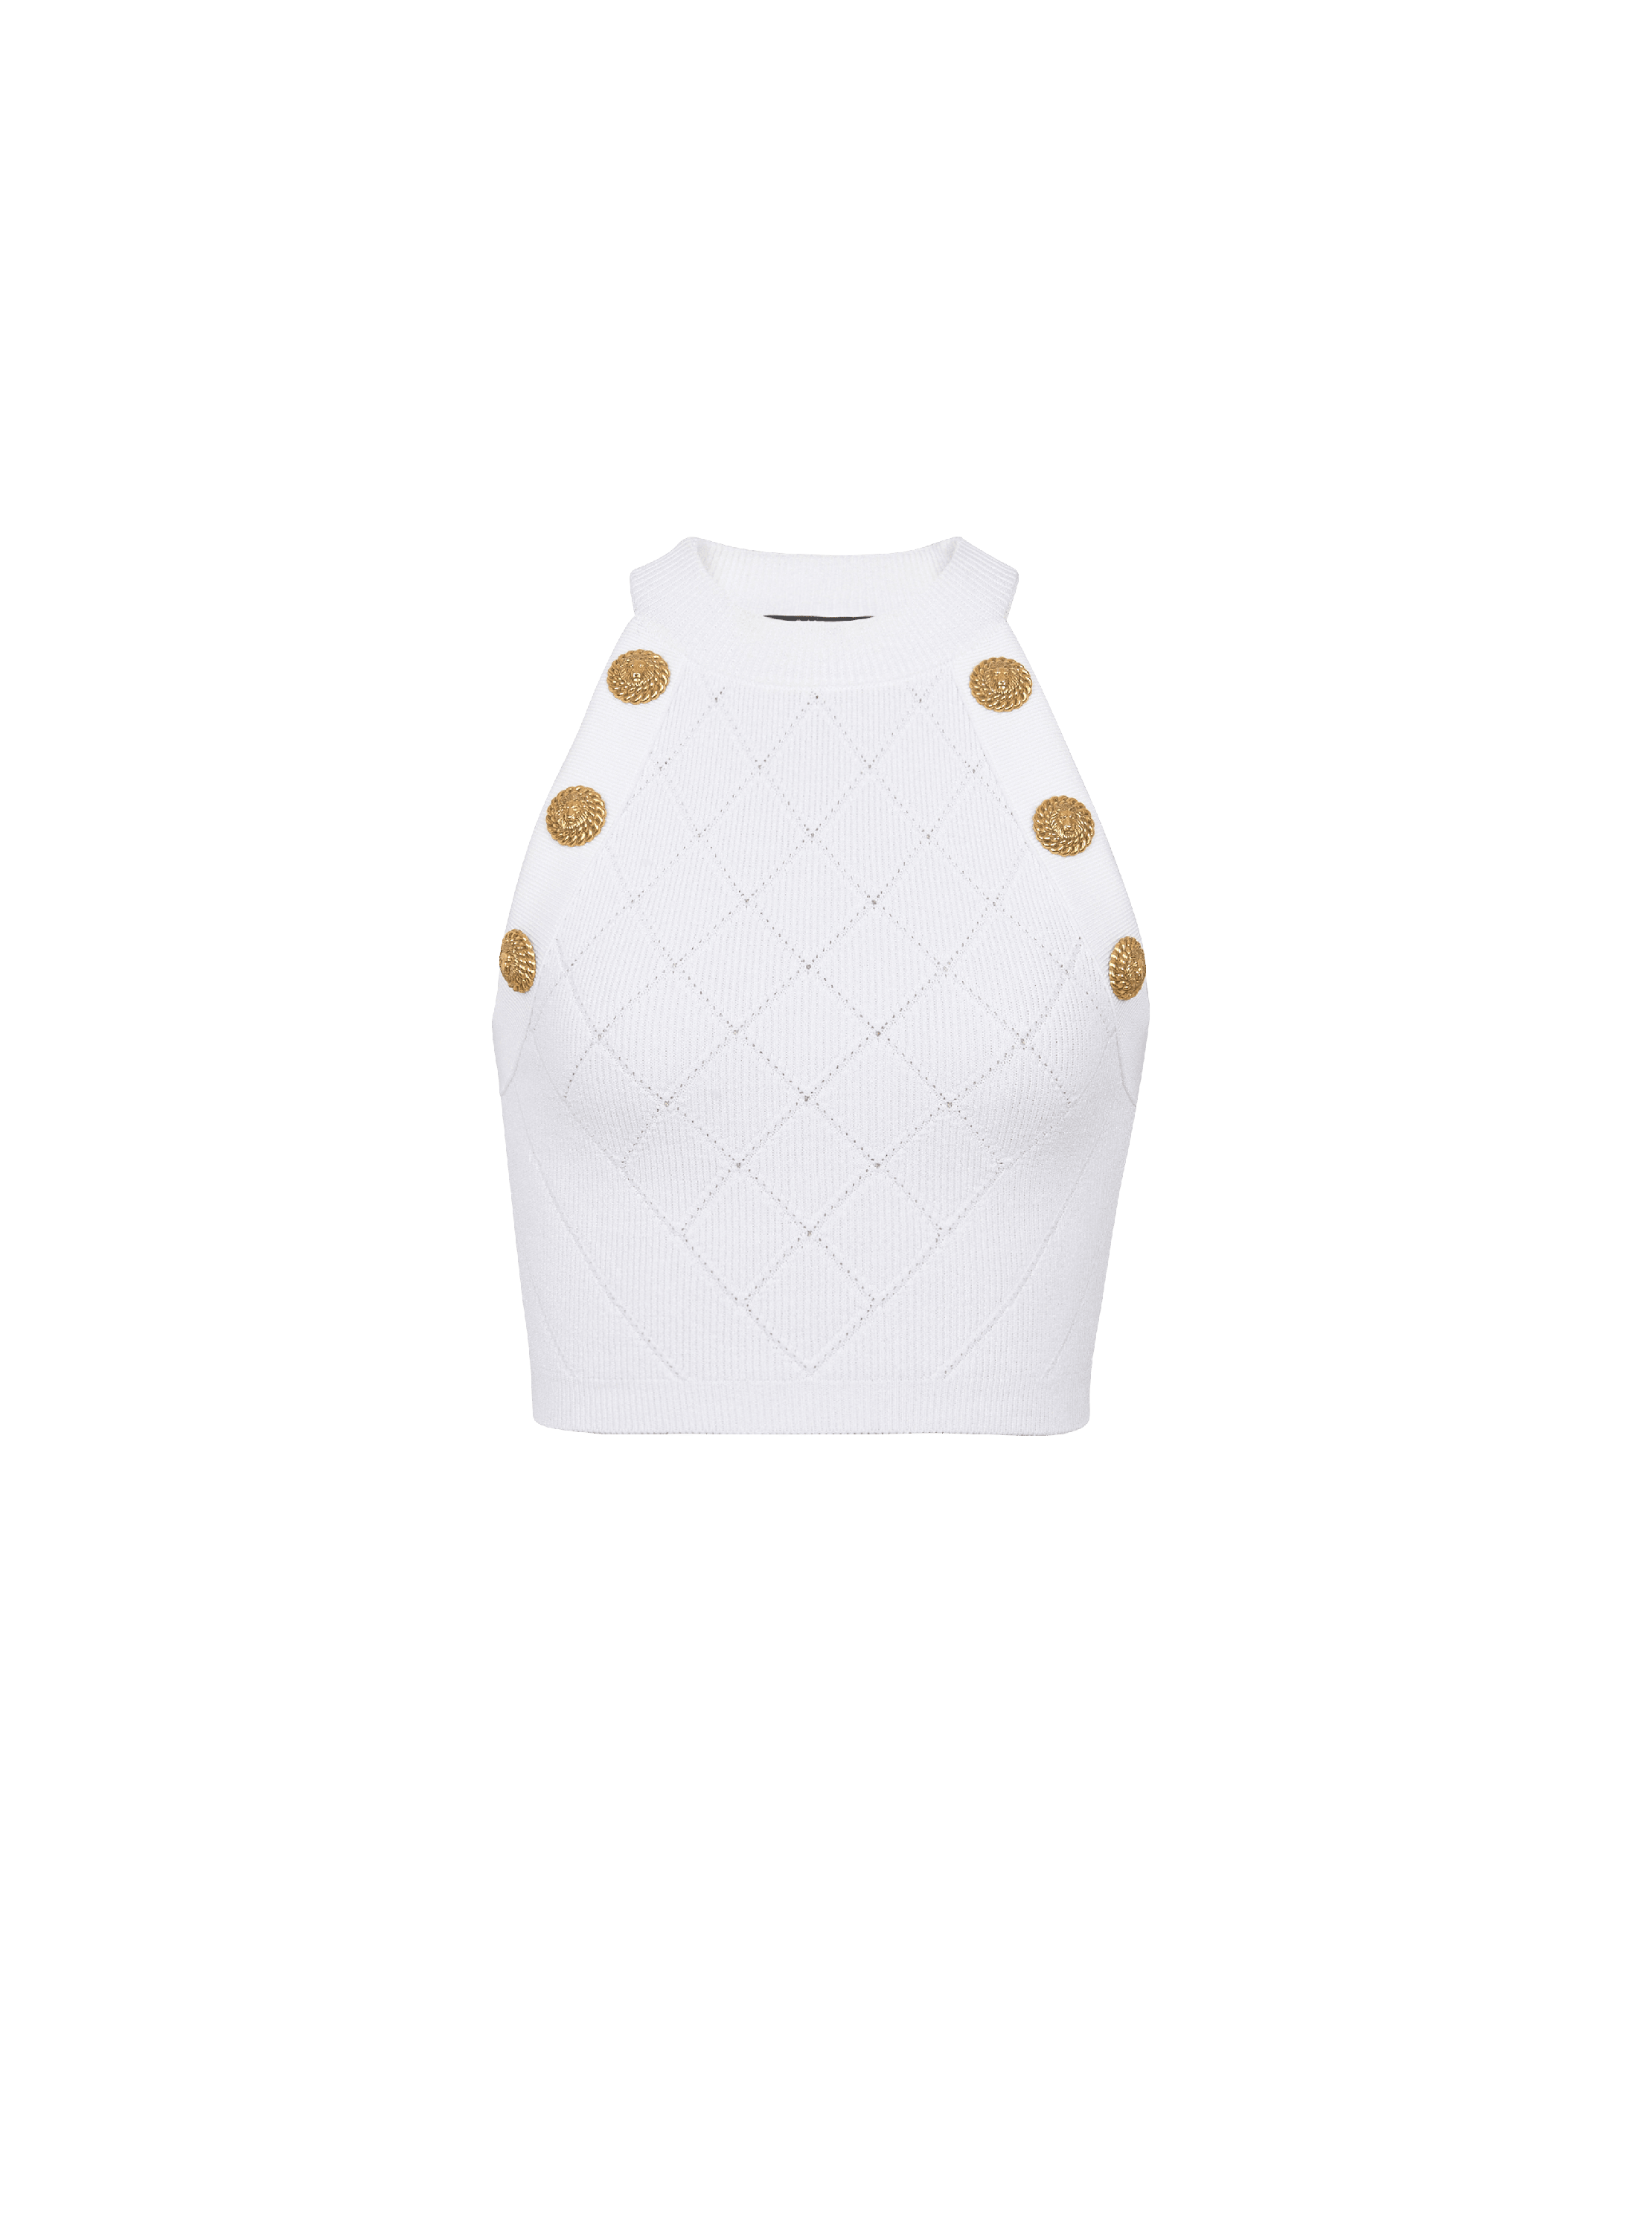 Camiseta de punto sin mangas con 6 botones, blanco, hi-res